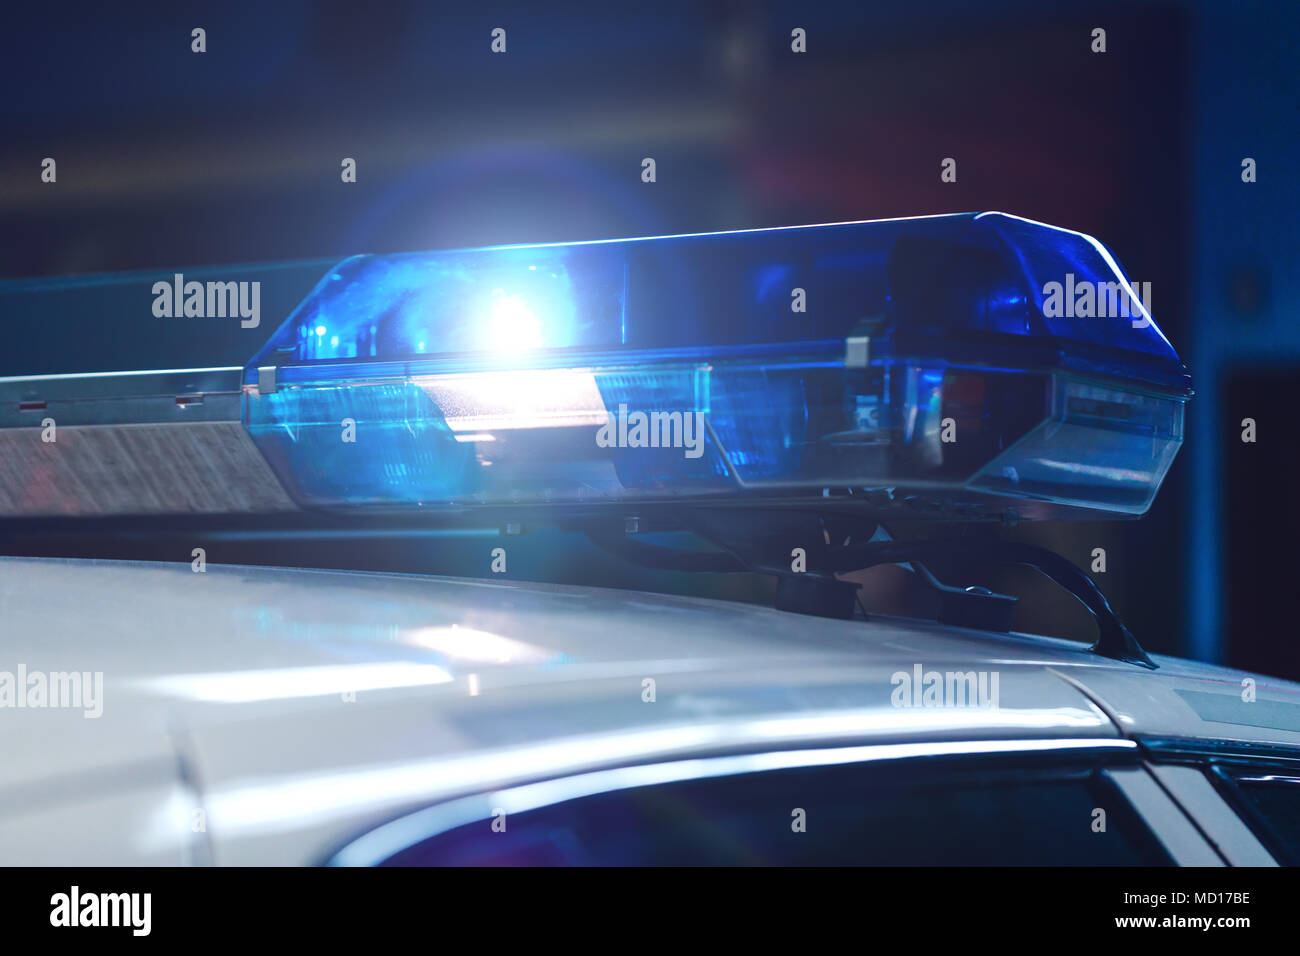 Polizei in der Nacht im Auto mit Blau Sirene Blinker. Siren Polizei Auto  blinkt, close-up. Polizei Licht und Sirene auf dem Auto in Aktion  Stockfotografie - Alamy